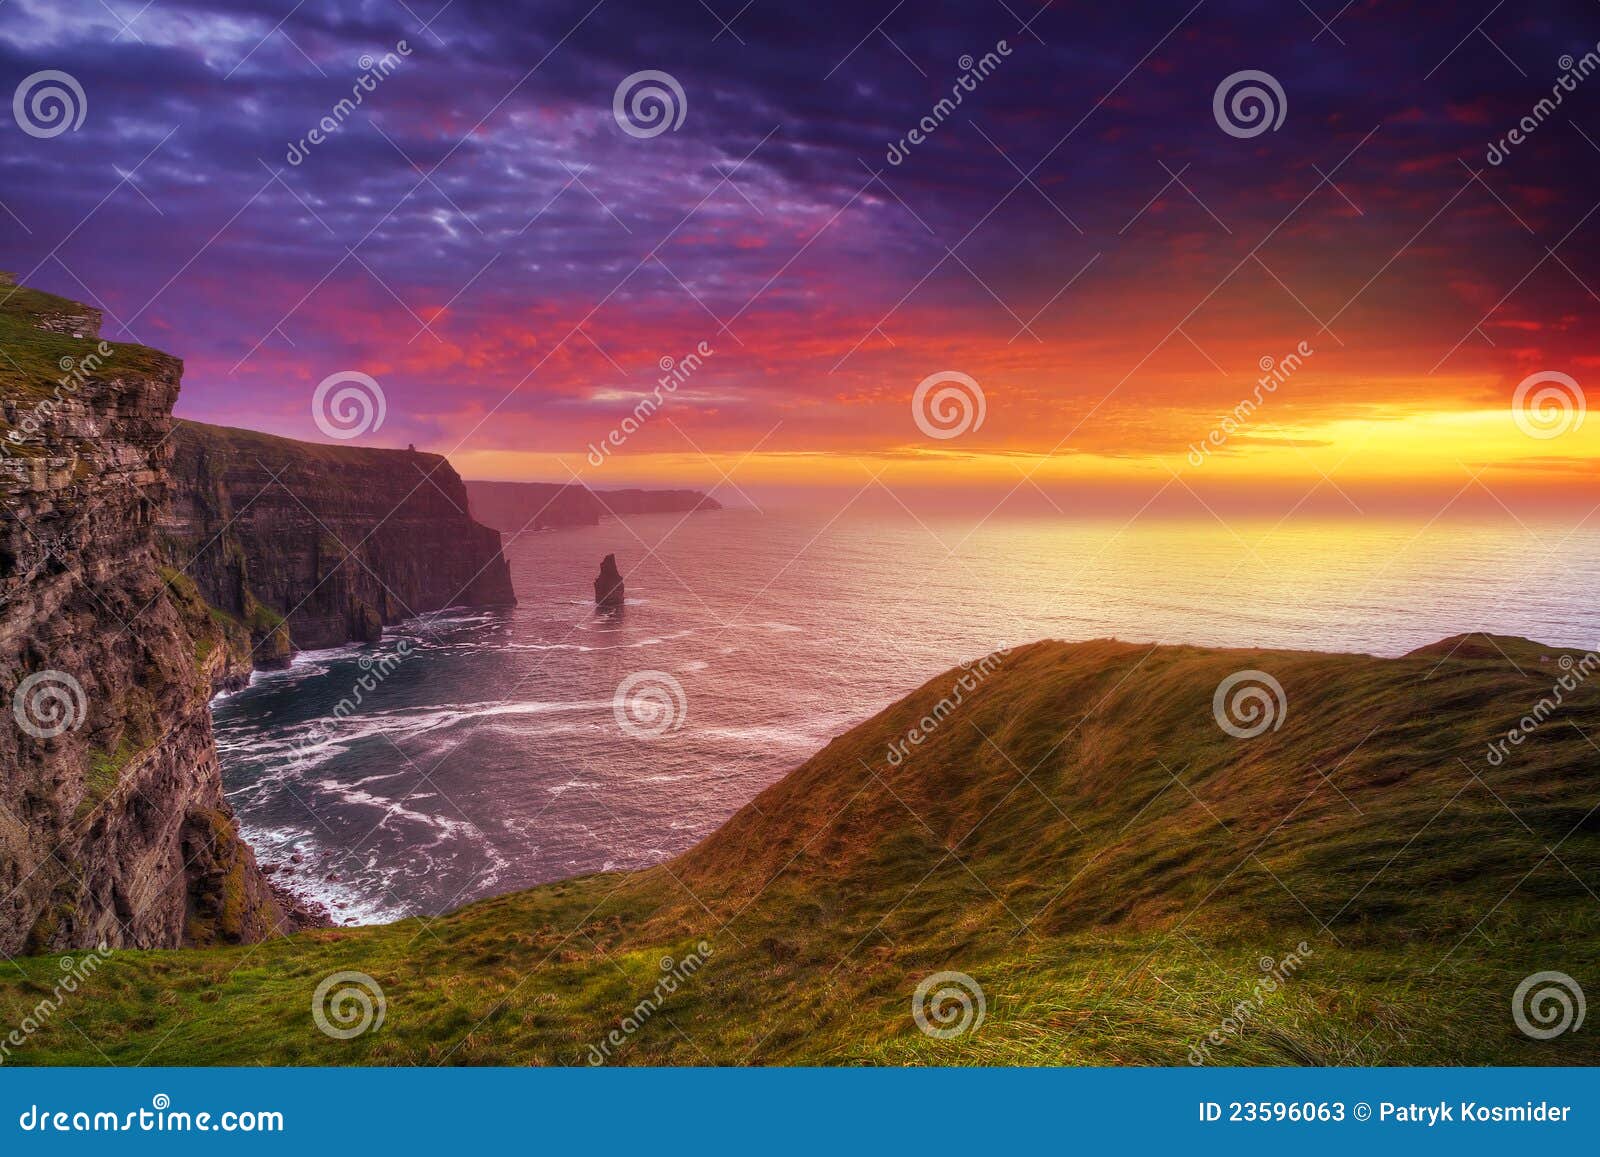 Erstaunlicher Sonnenuntergang an den Klippen von Moher, Co. Clare, Irland